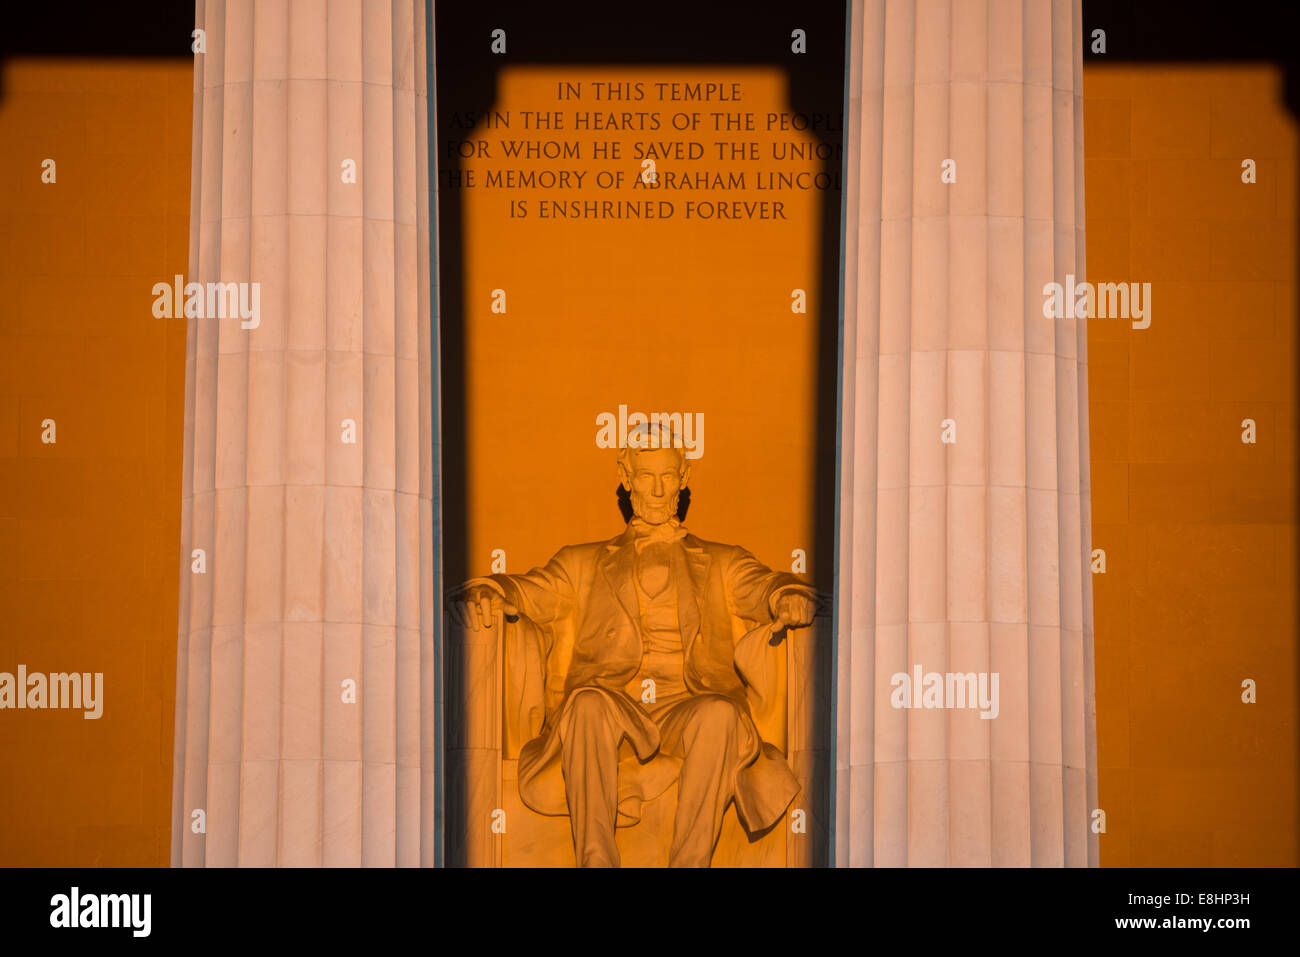 WASHINGTON DC, Stati Uniti d'America - una luce dorata momenti dopo l'alba si crogiola la statua di Abramo Lincoln nel Lincoln Memorial a Washington DC. Questo evento si verifica solo in alcuni periodi dell'anno con un chiaro tramonto quando il sole sta sorgendo direttamente in oriente per l'Equinozio. Foto Stock